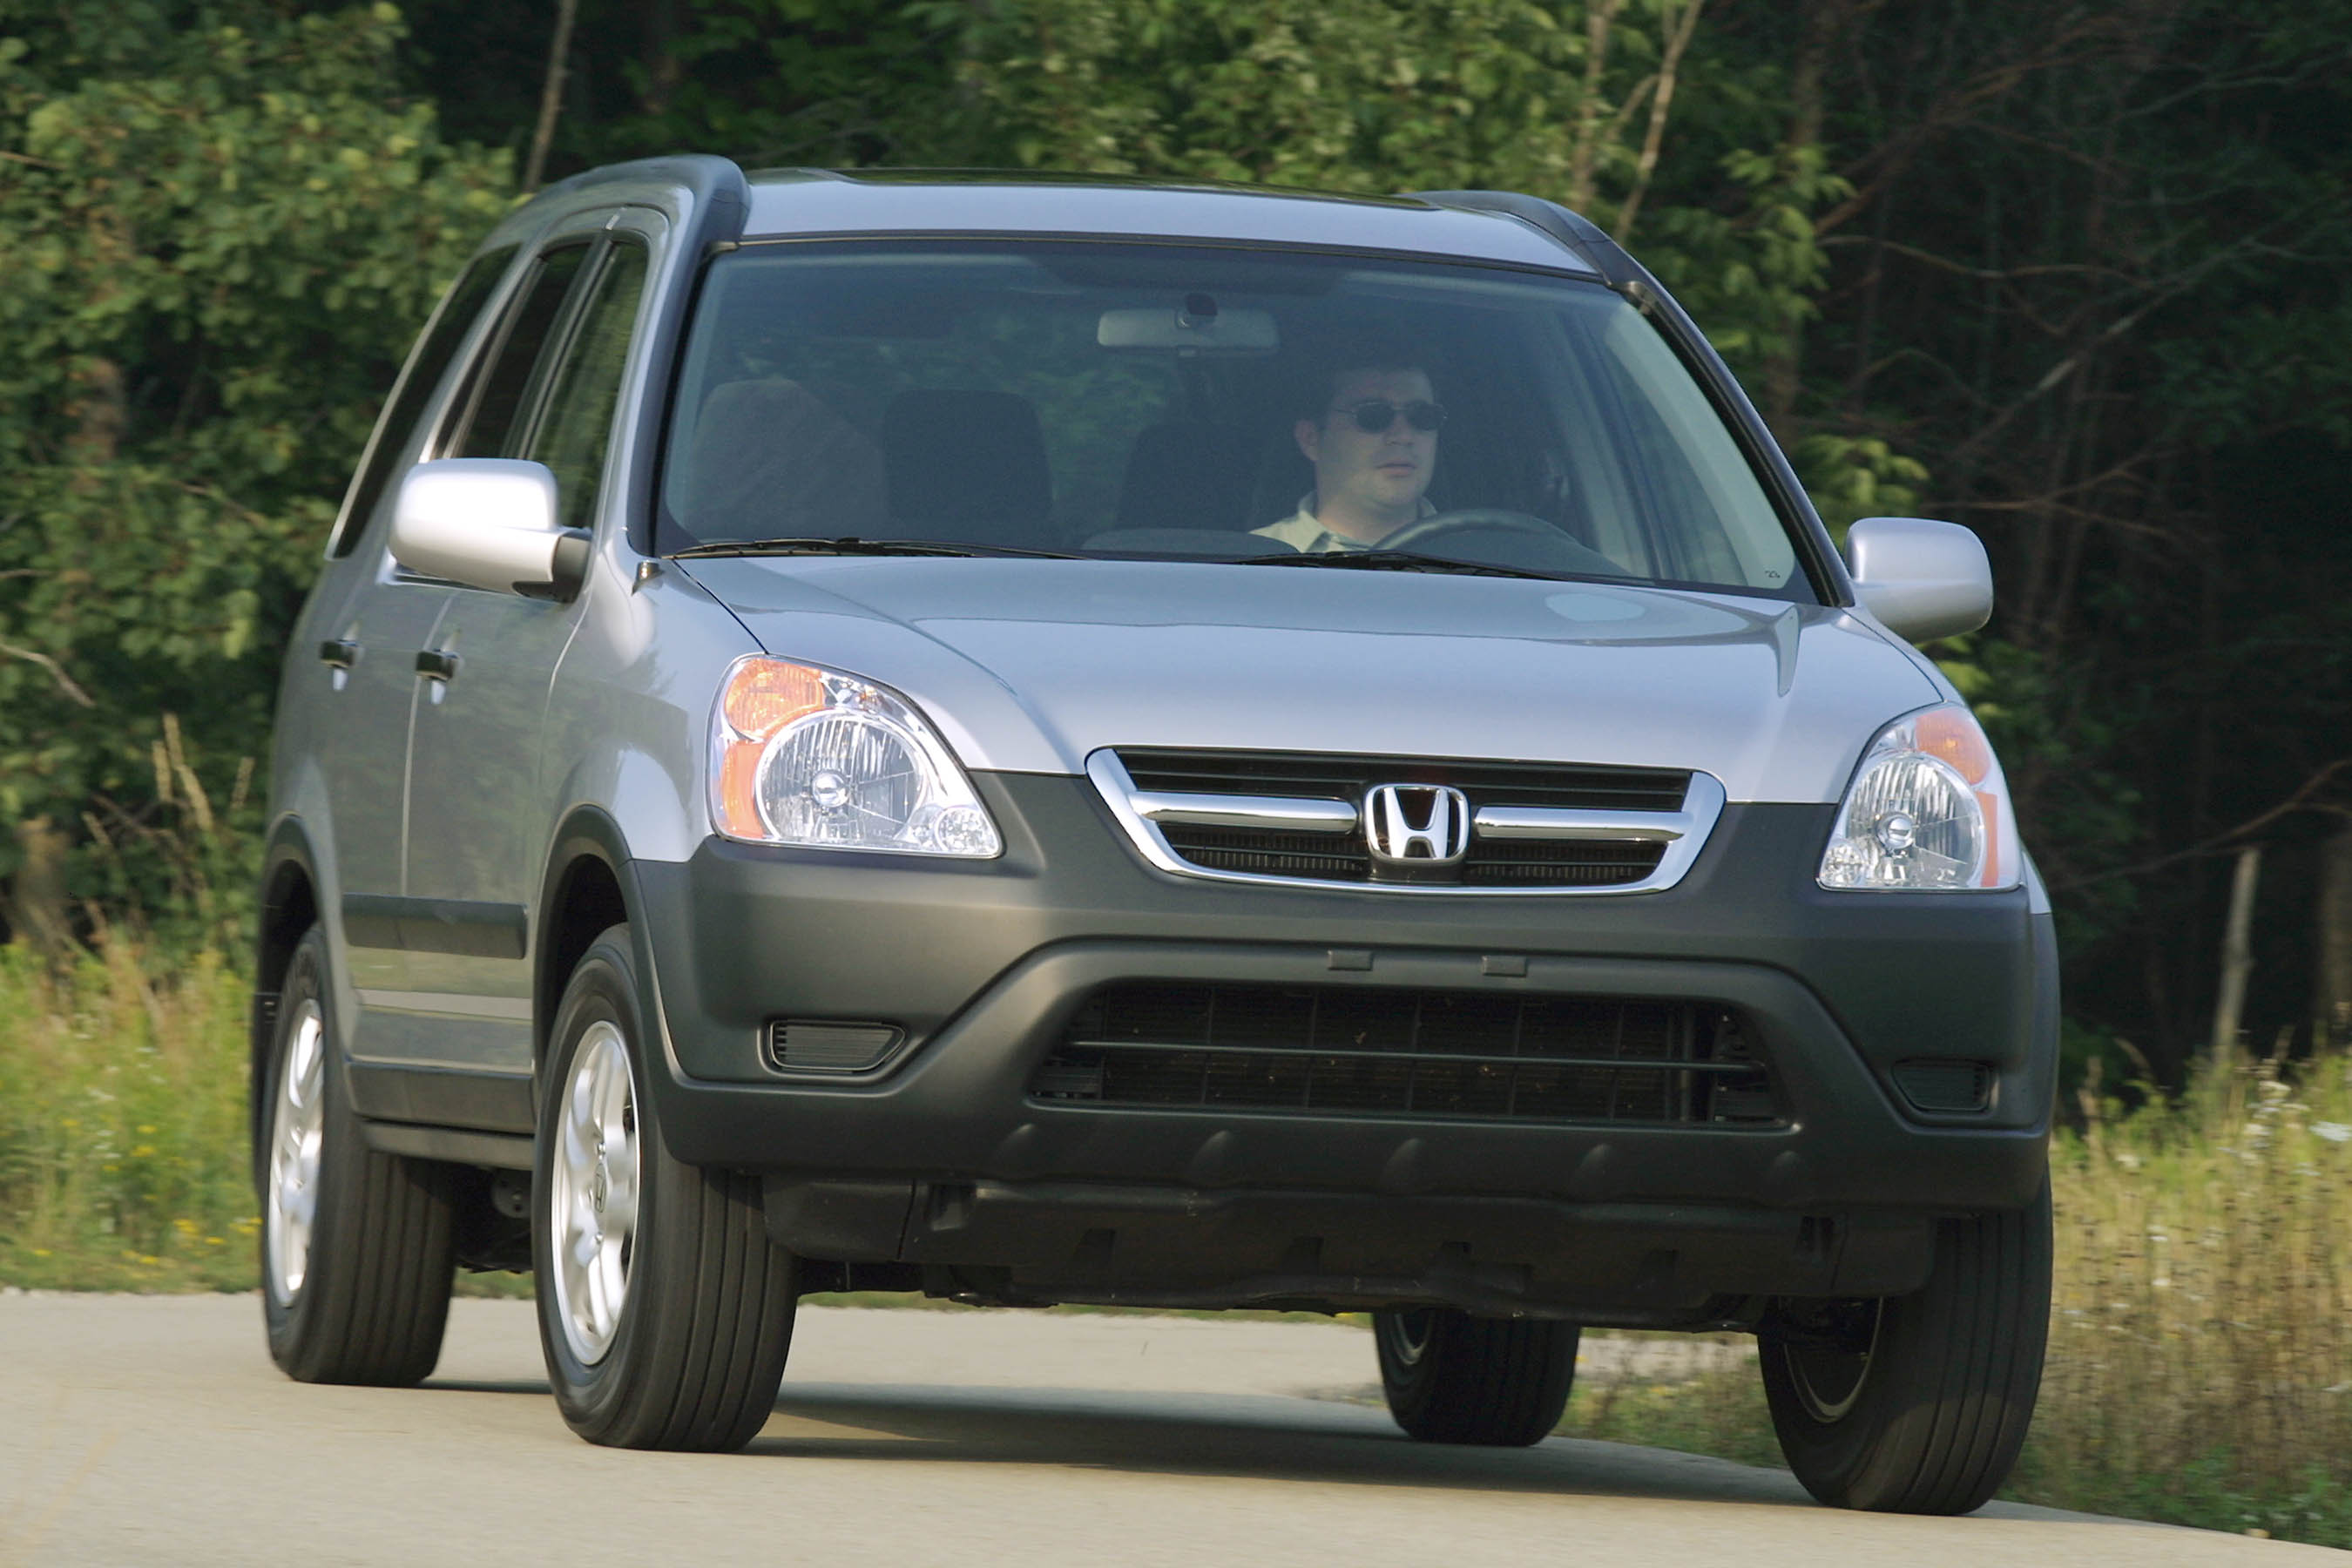 Honda cr v 2003. Honda CR-V 2002. Honda CR-V 2 2002. Honda CRV 2003.